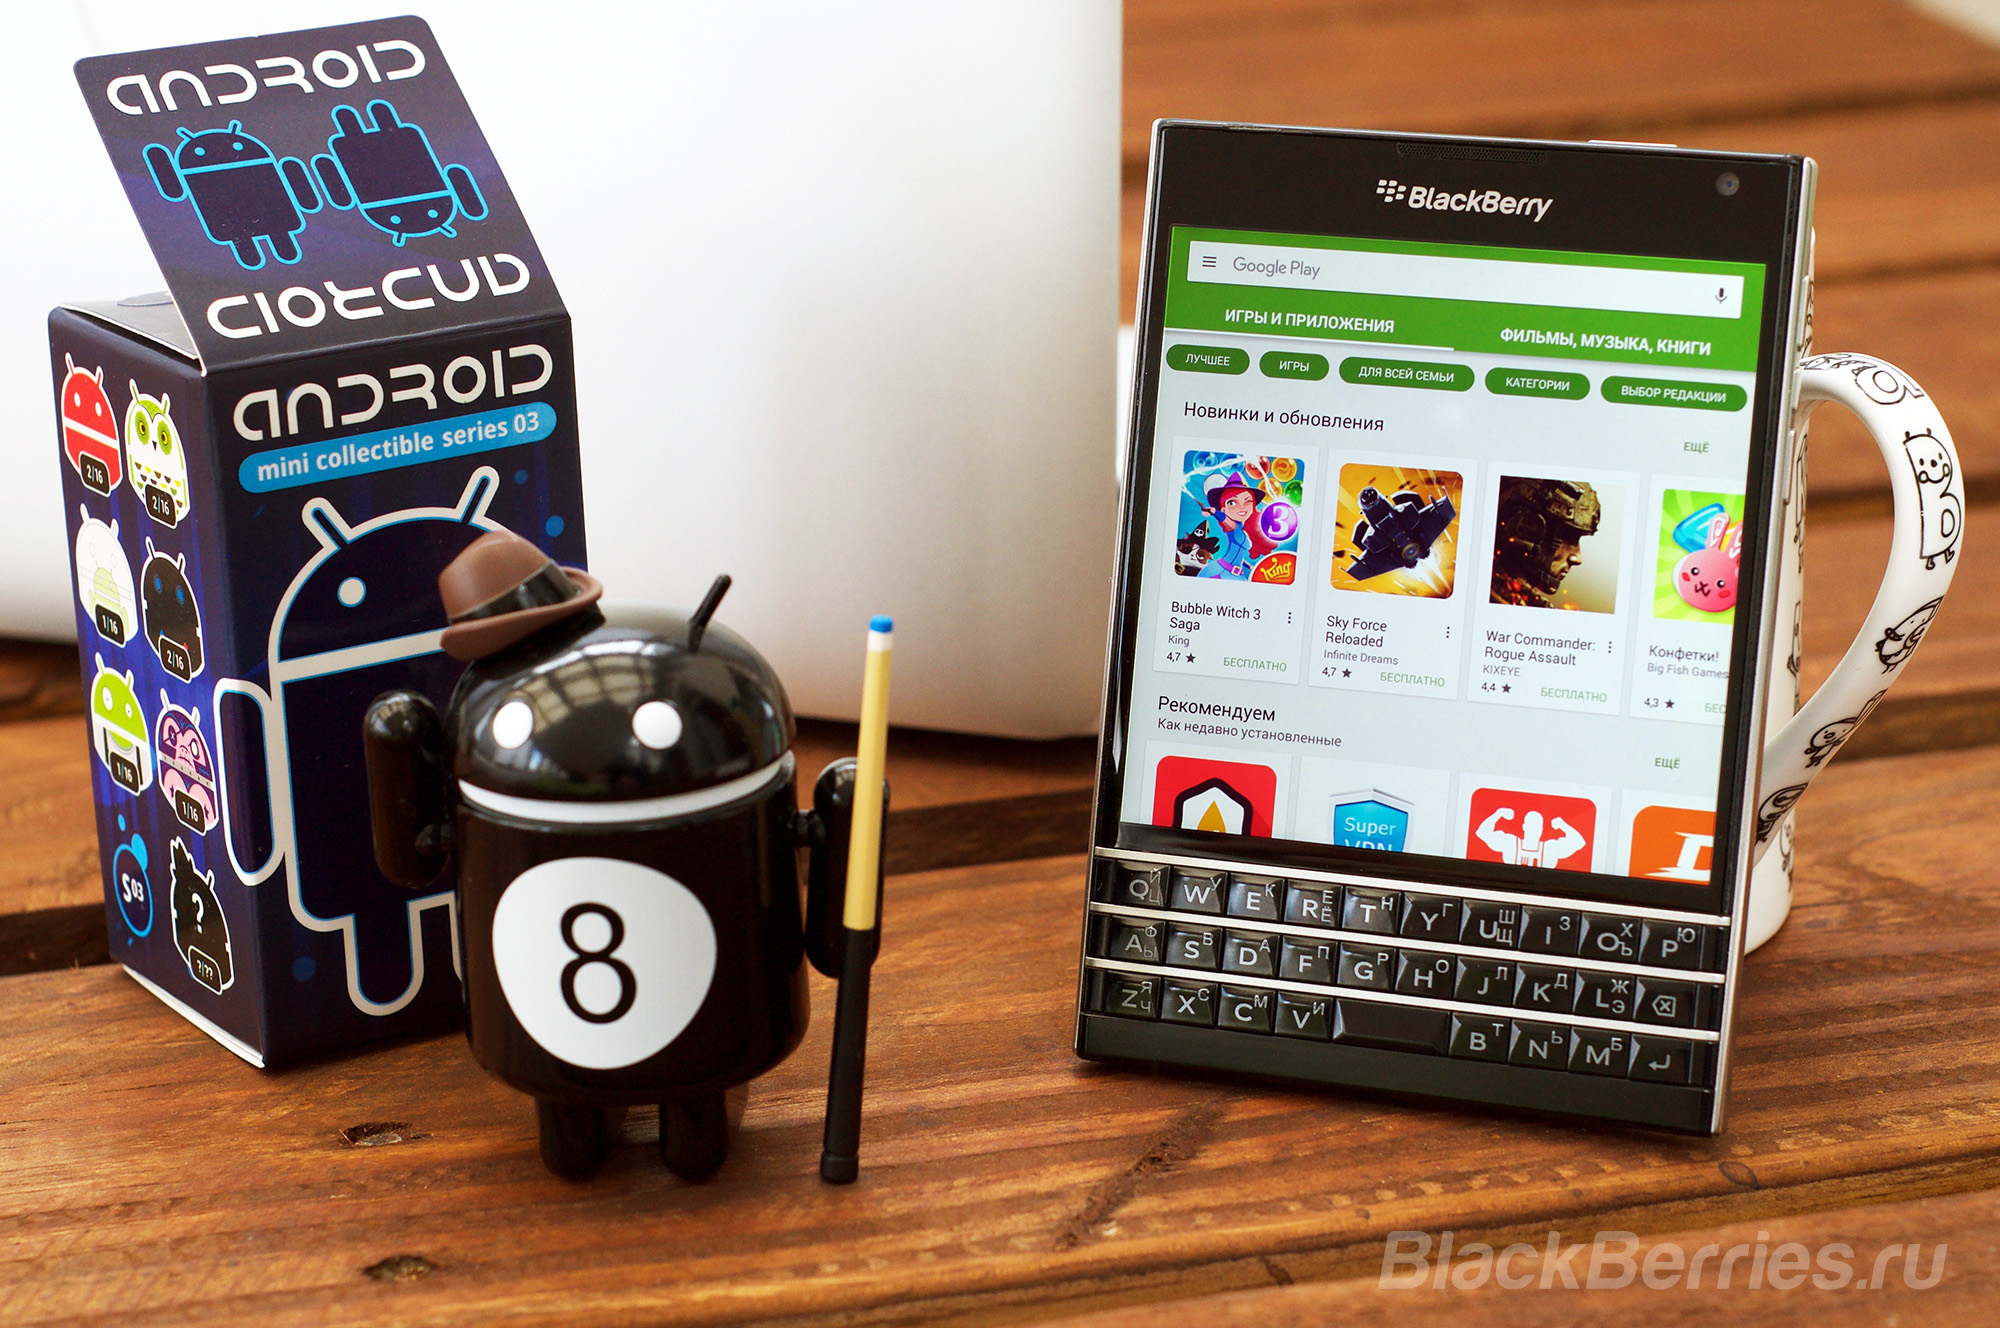 Якщо ви вибираєте для себе новий телефон BlackBerry і плануєте використовувати соціальні мережі, месенджери, навігаційні або банківські додатки, ми вам настійно рекомендуємо вибрати один з смартфонів BlackBerry на базі Android -   BlackBerry PRIV, DTEK50, DTEK60   або дочекатися виходу нового QWERTY смартфона   BlackBerry KEYone